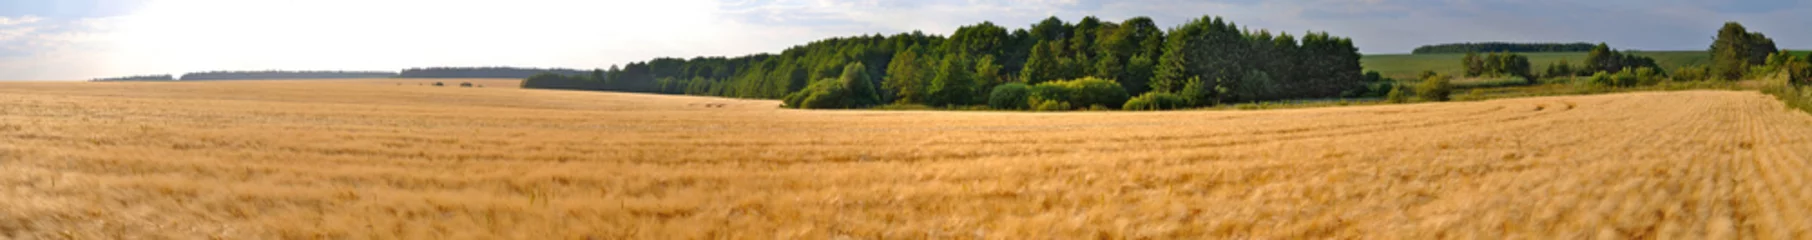 Papier Peint photo Lavable Campagne panorama de champ de blé